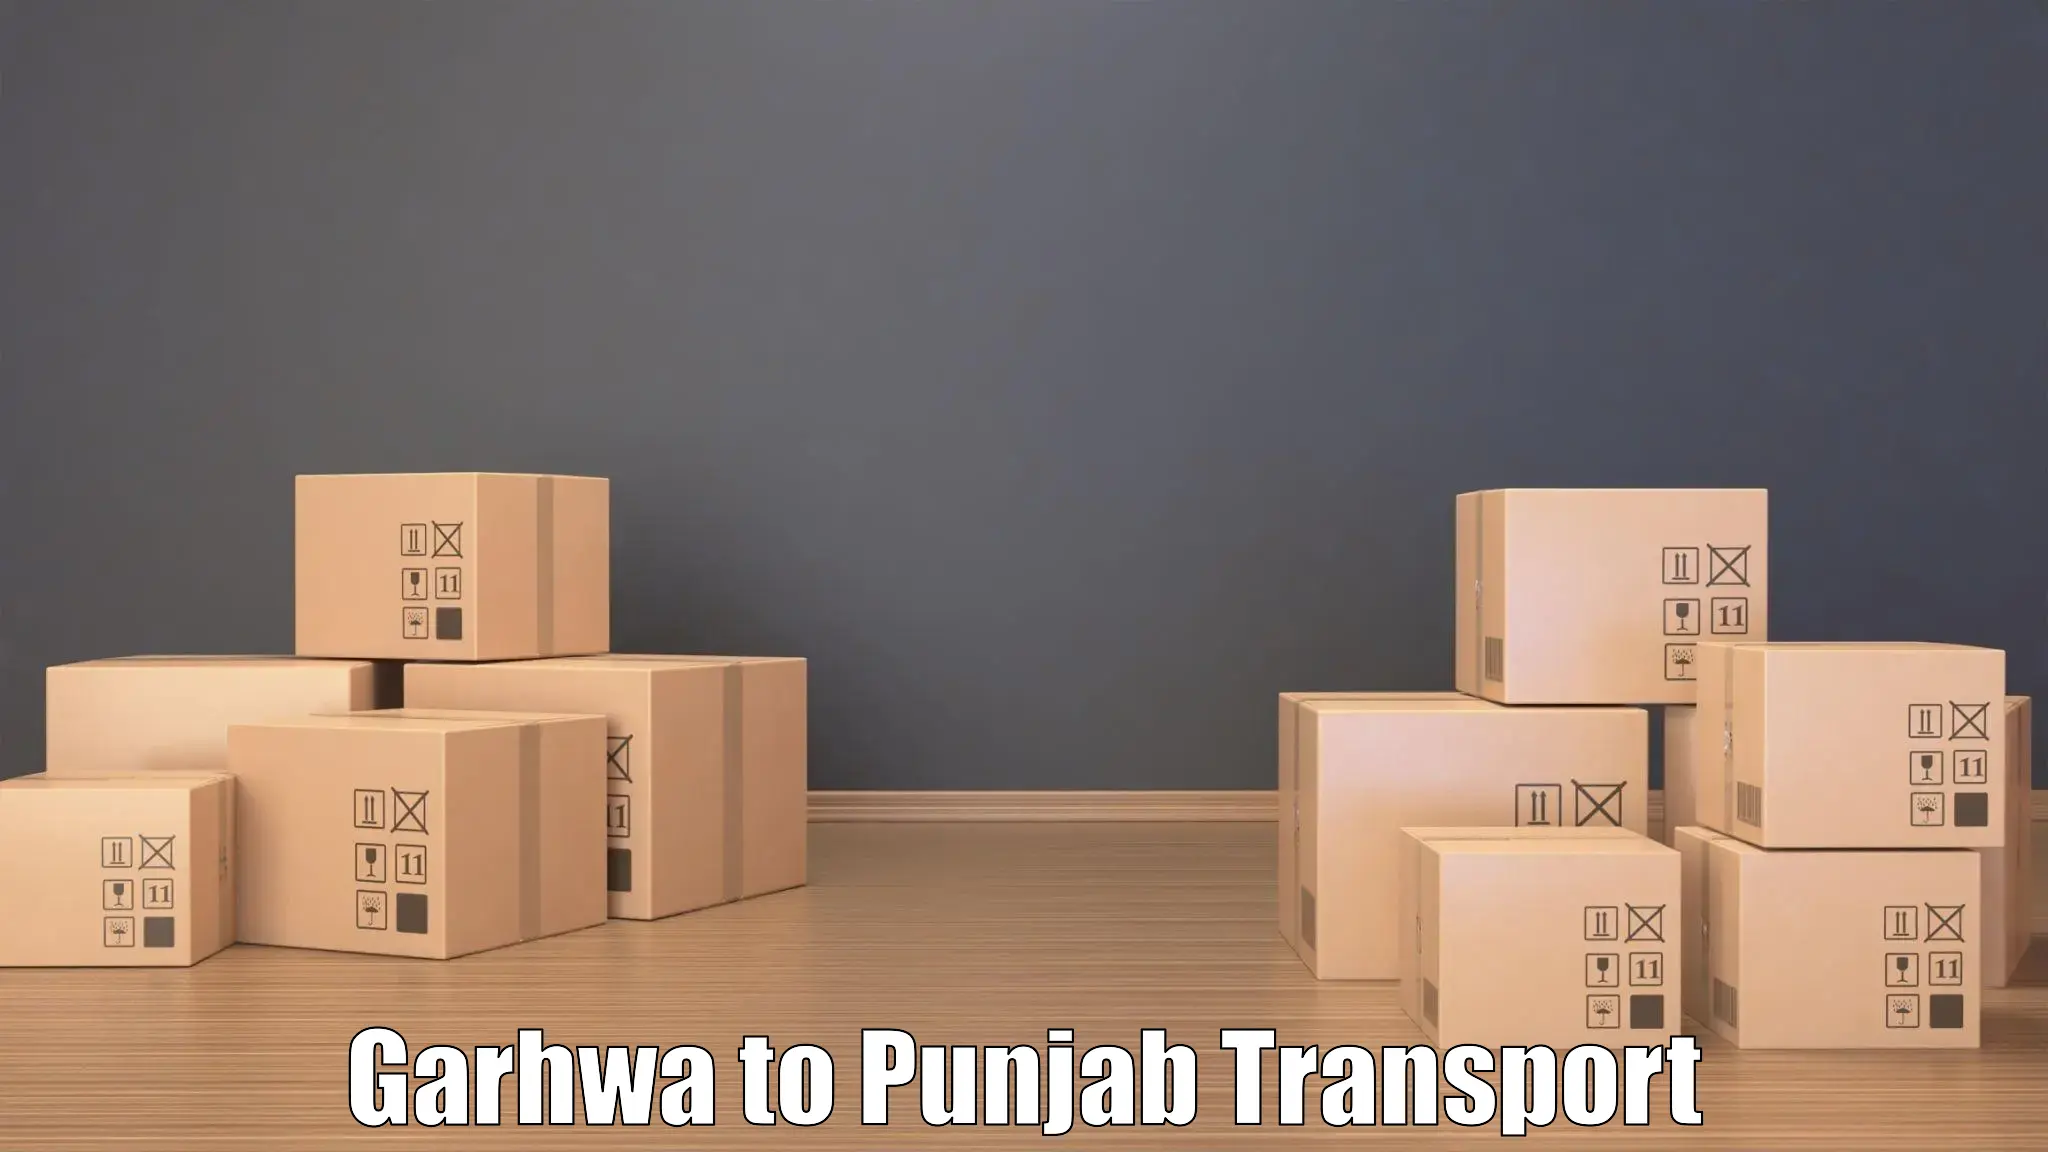 Transportation services in Garhwa to Punjab